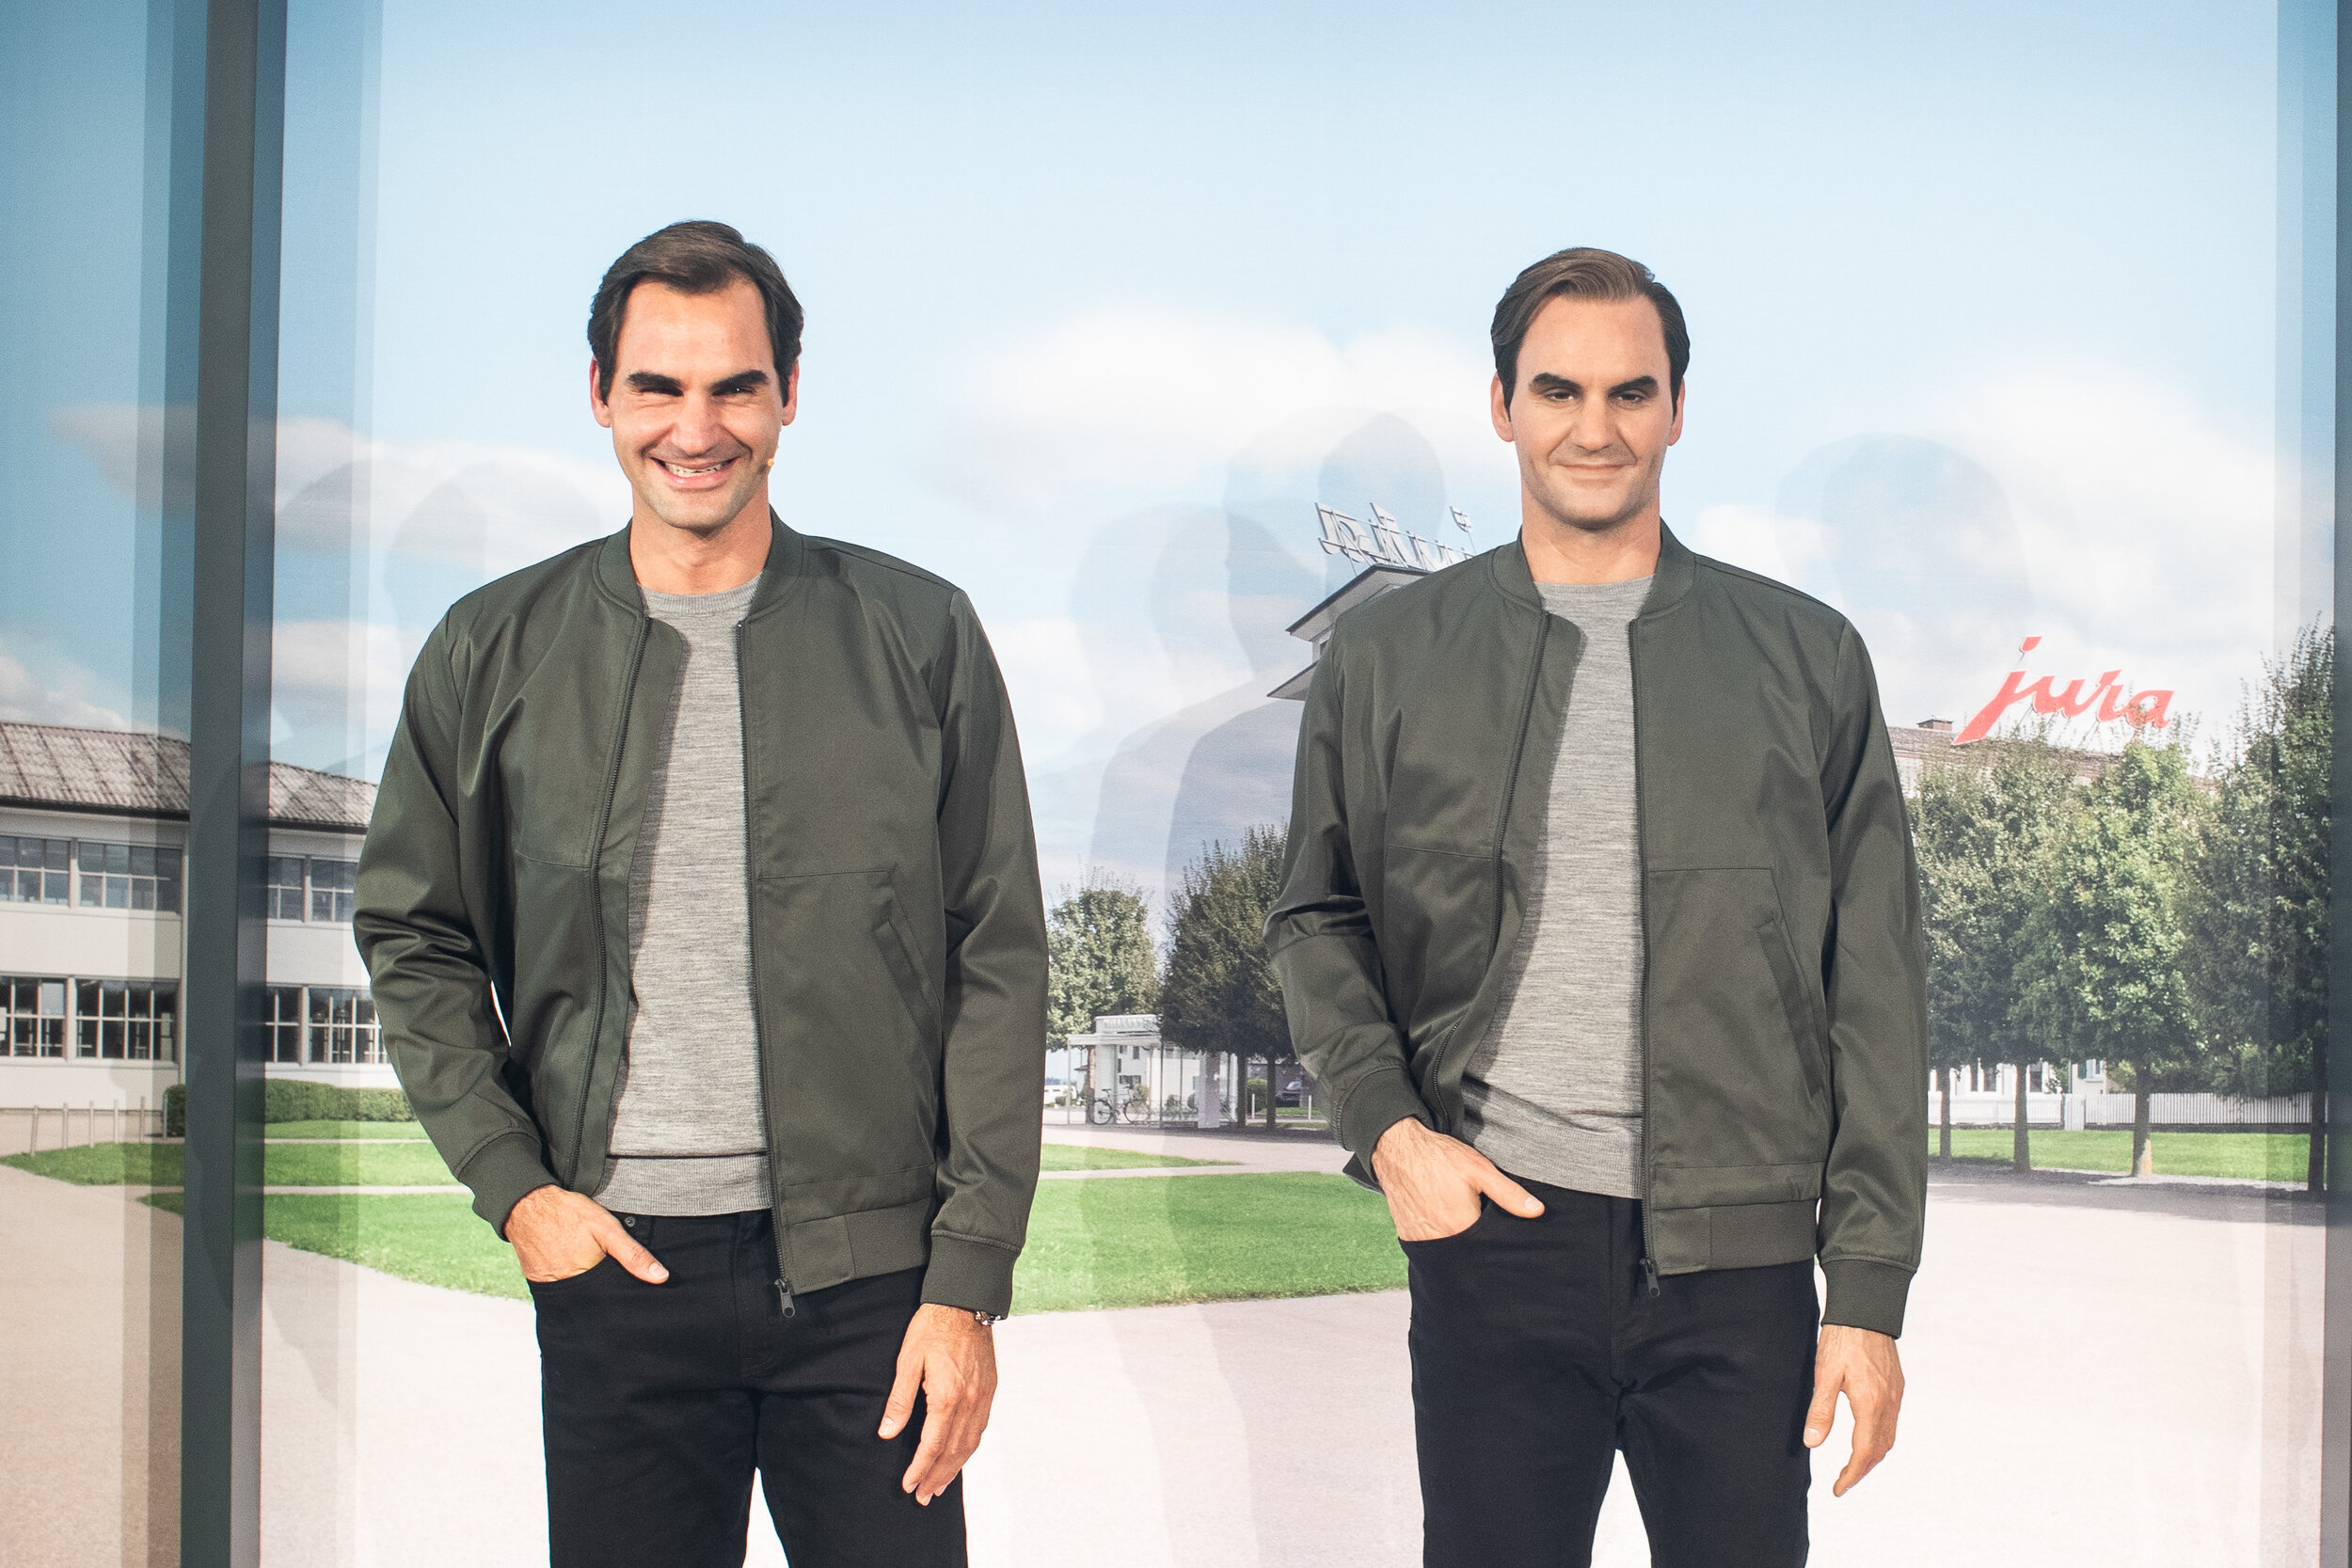  Roger Federer for Jura, 2019 